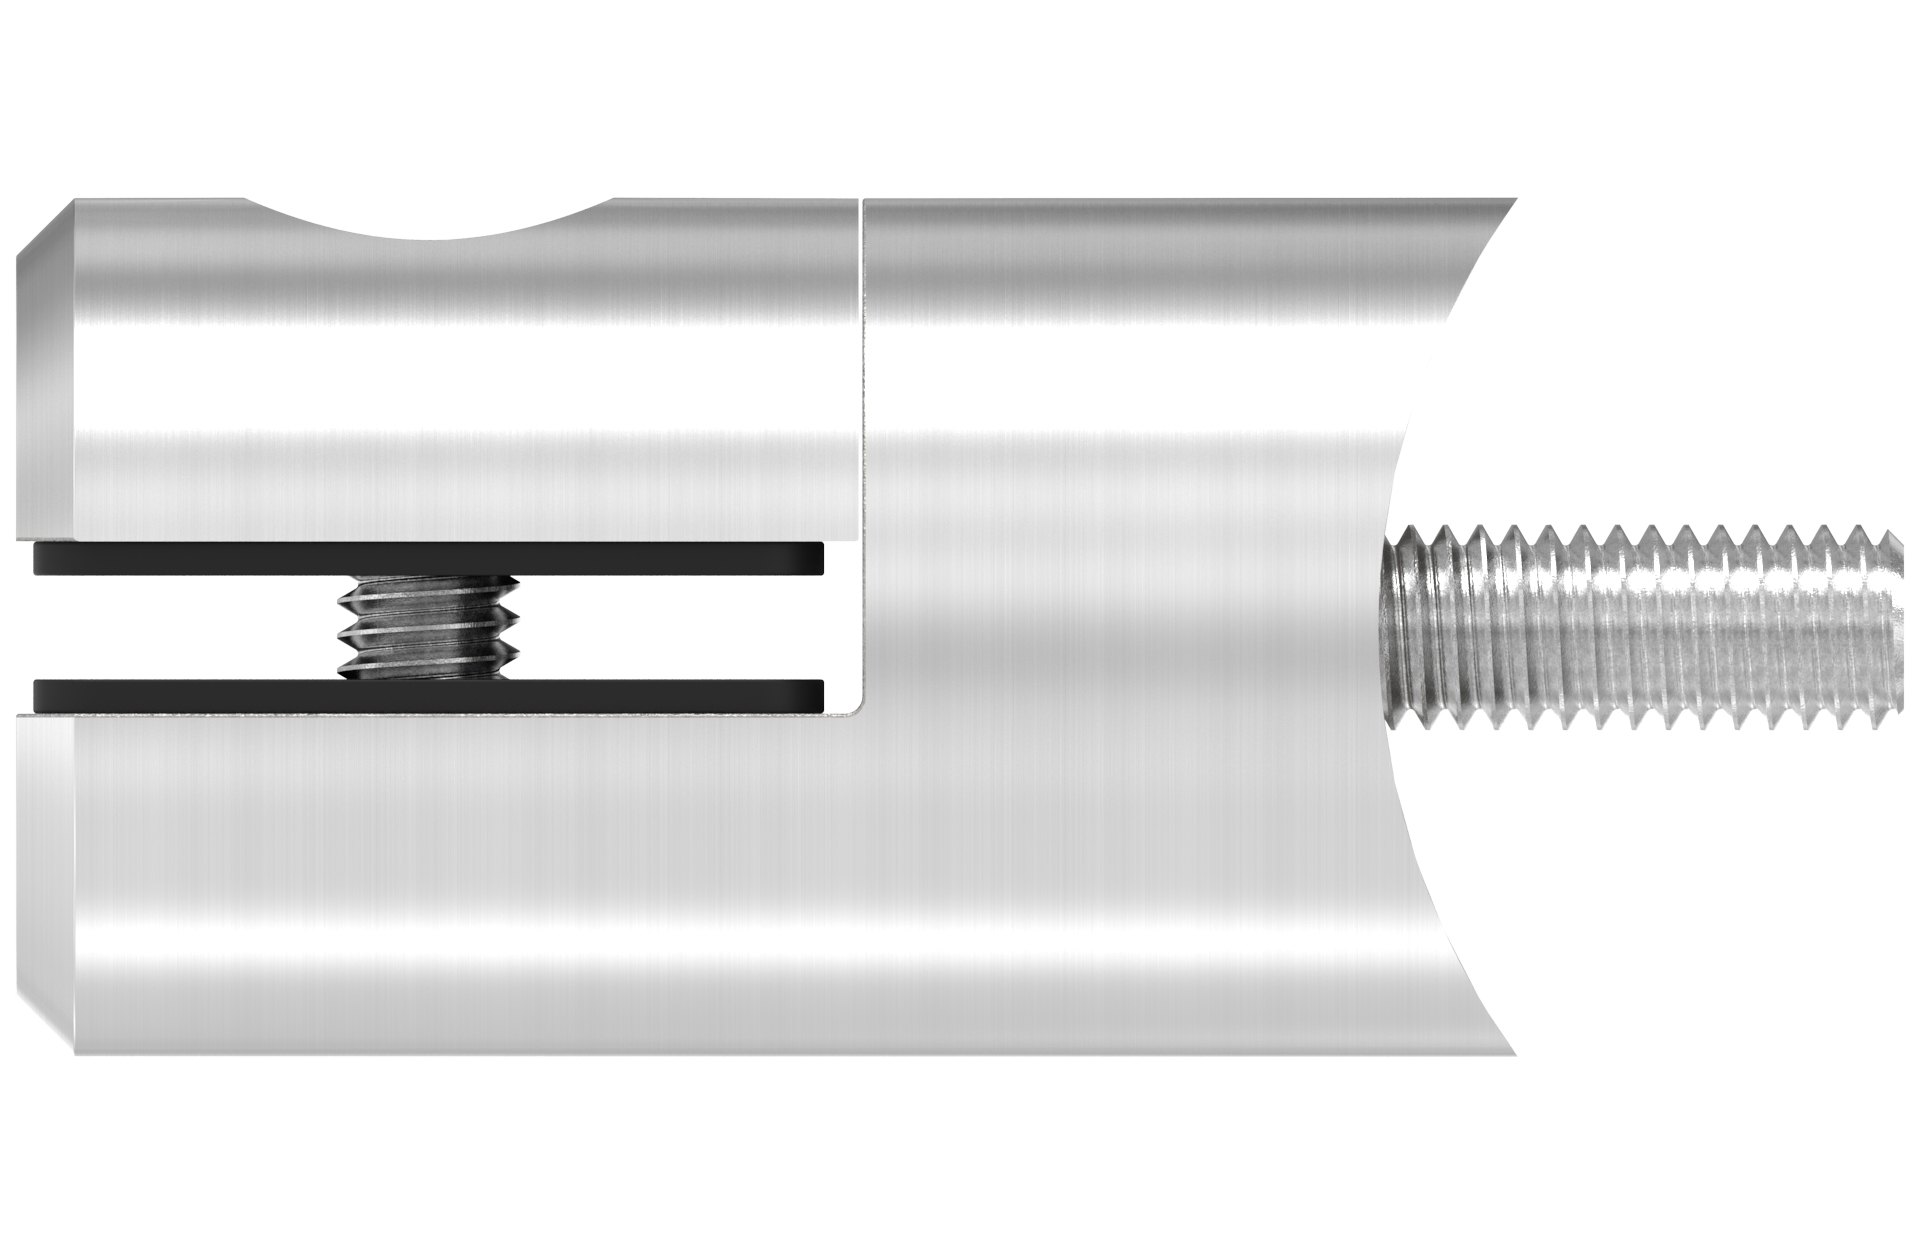 Blechadapter für Blech 1,5 - 4mm mit rundem Anschluss für Rohr d=42,4mm AISI 316 geschliffen